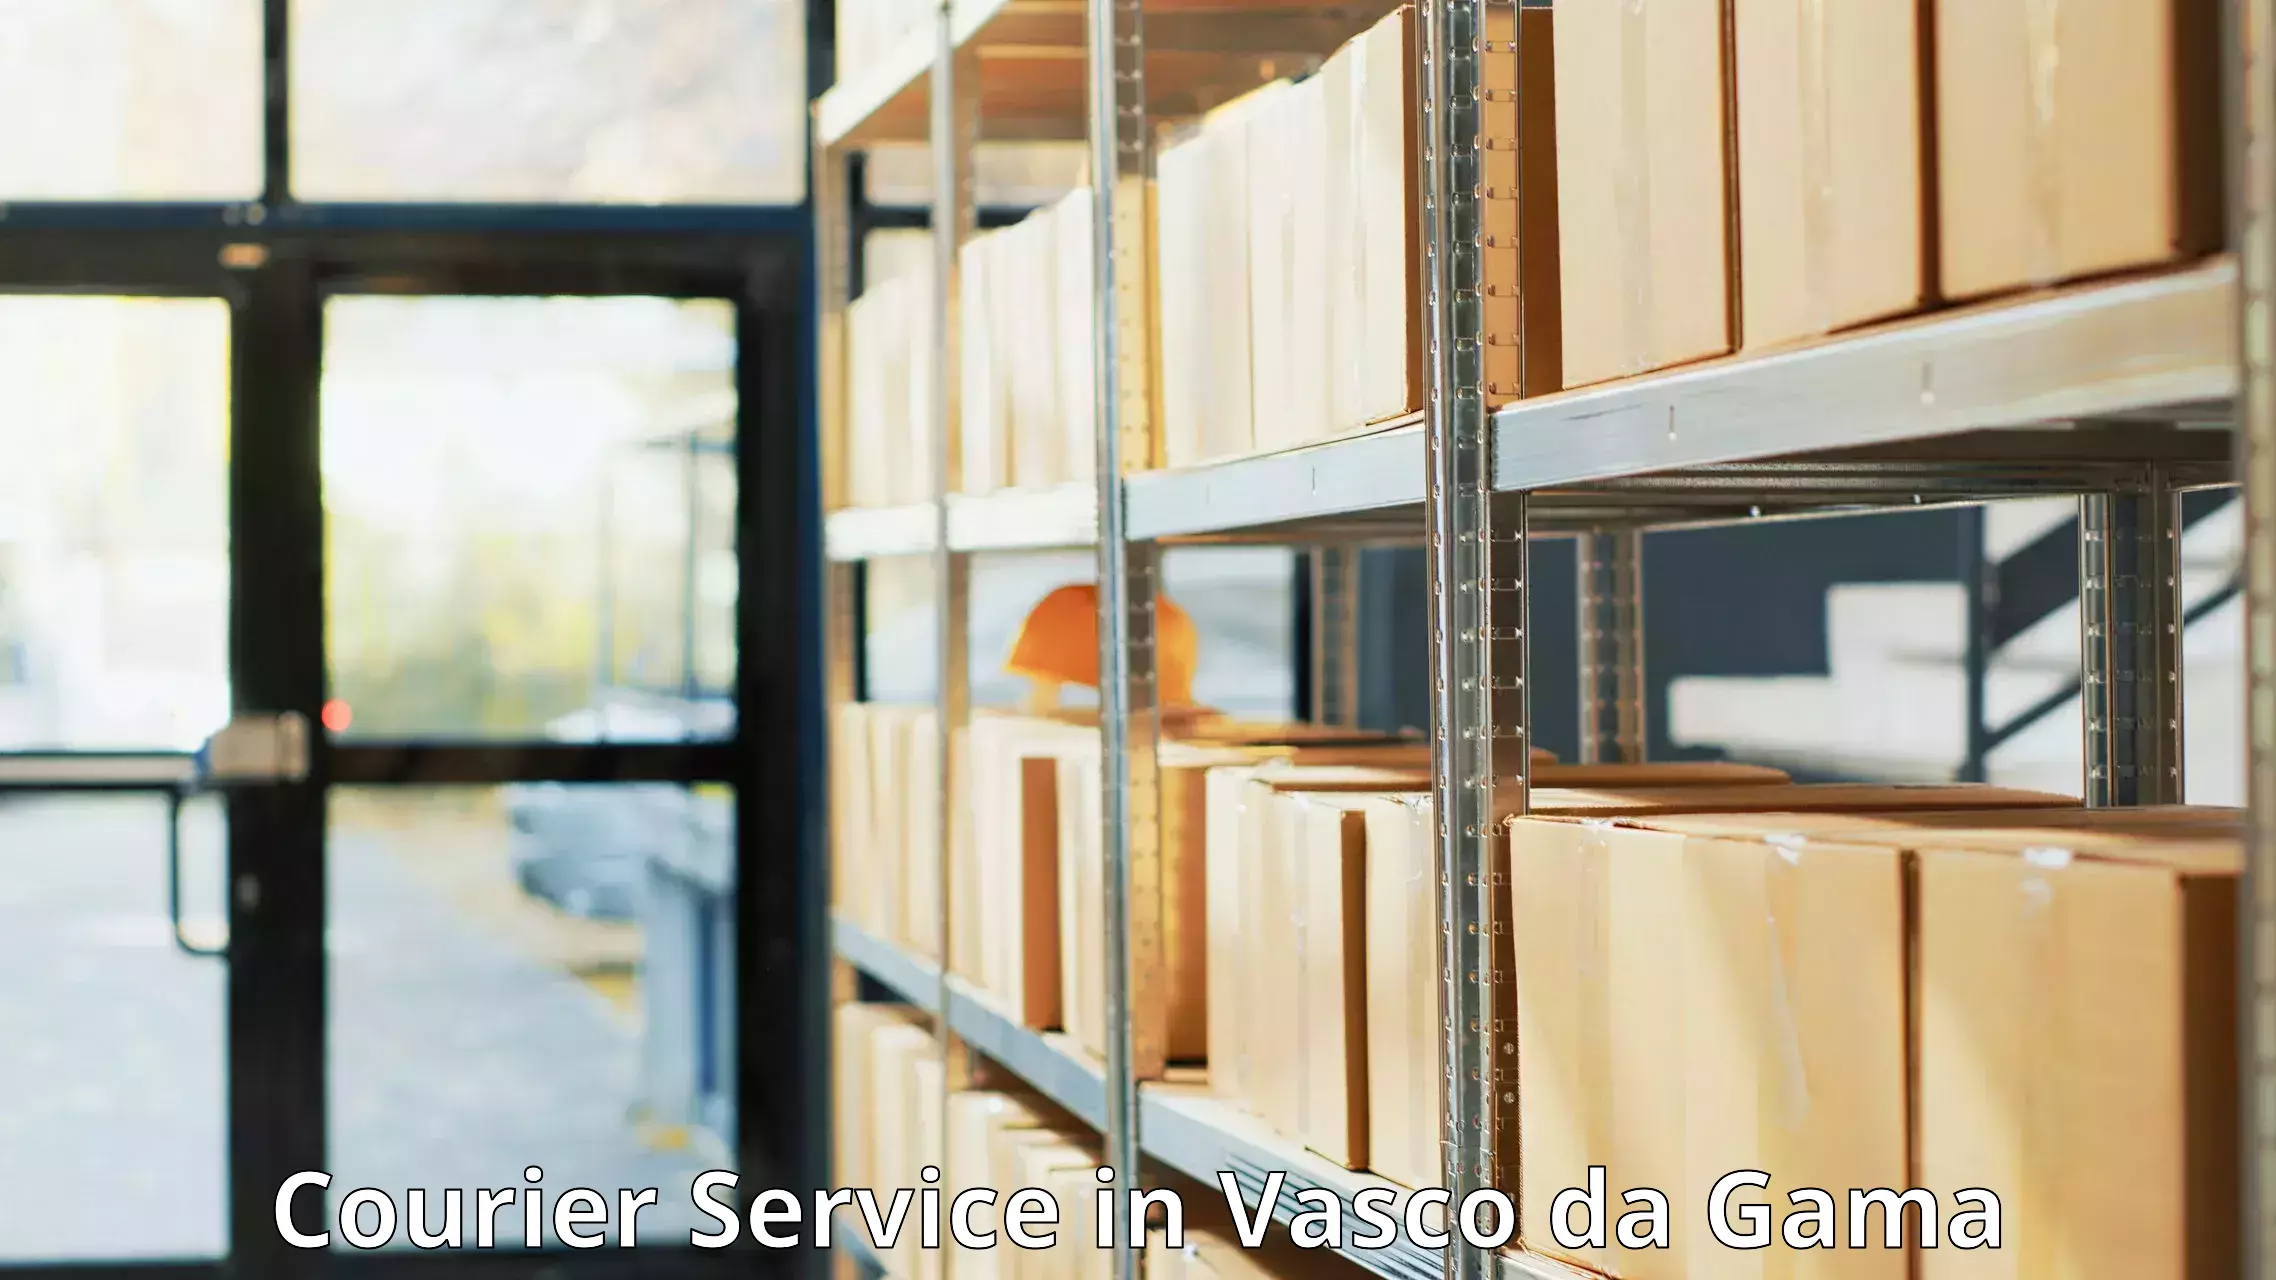 Express postal services in Vasco da Gama